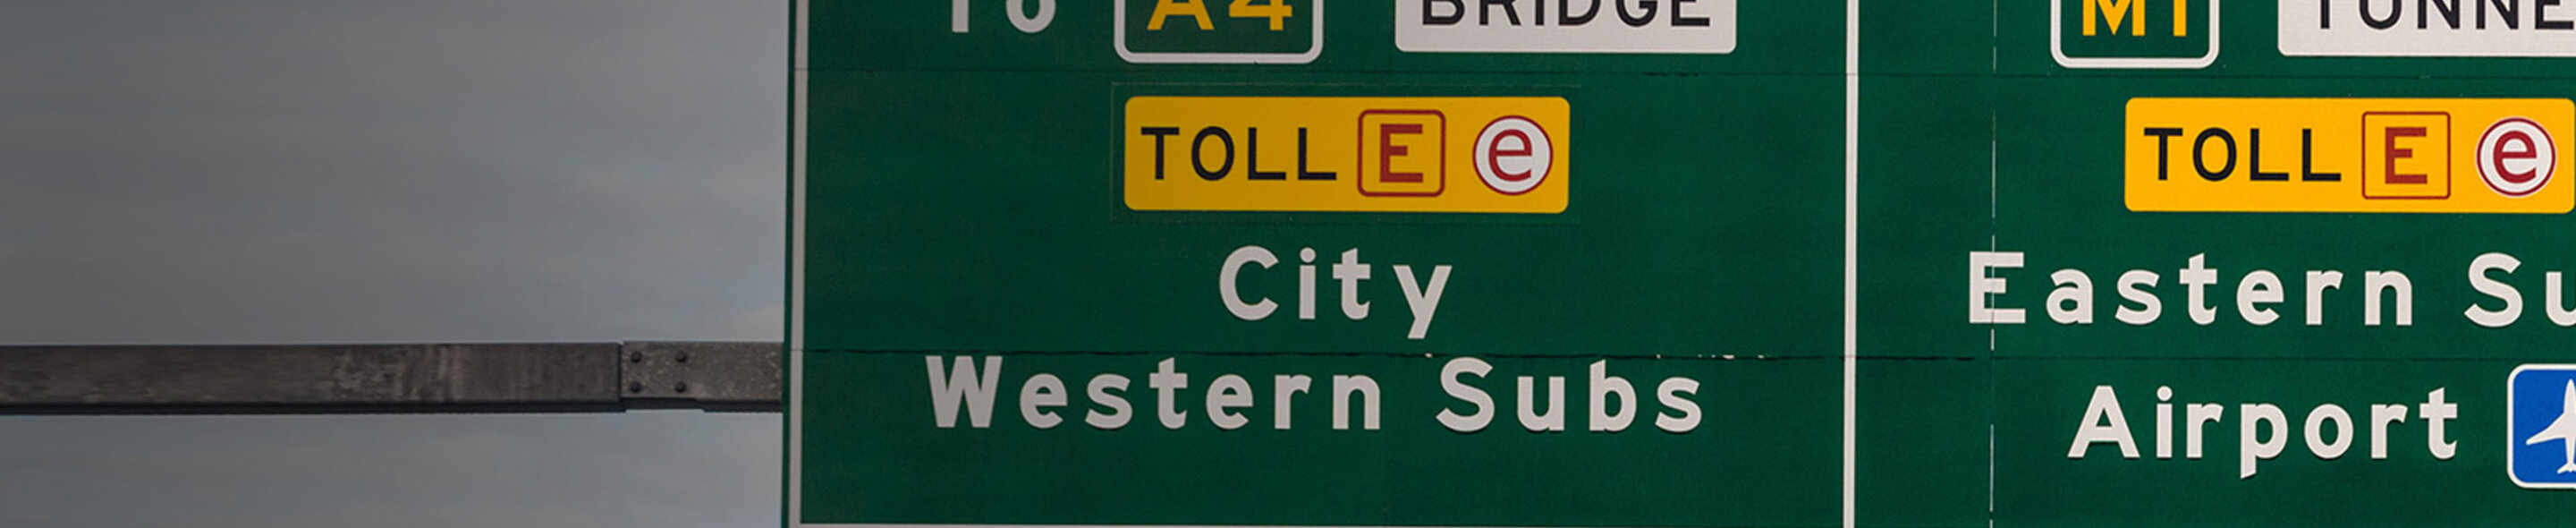 E-Toll sign